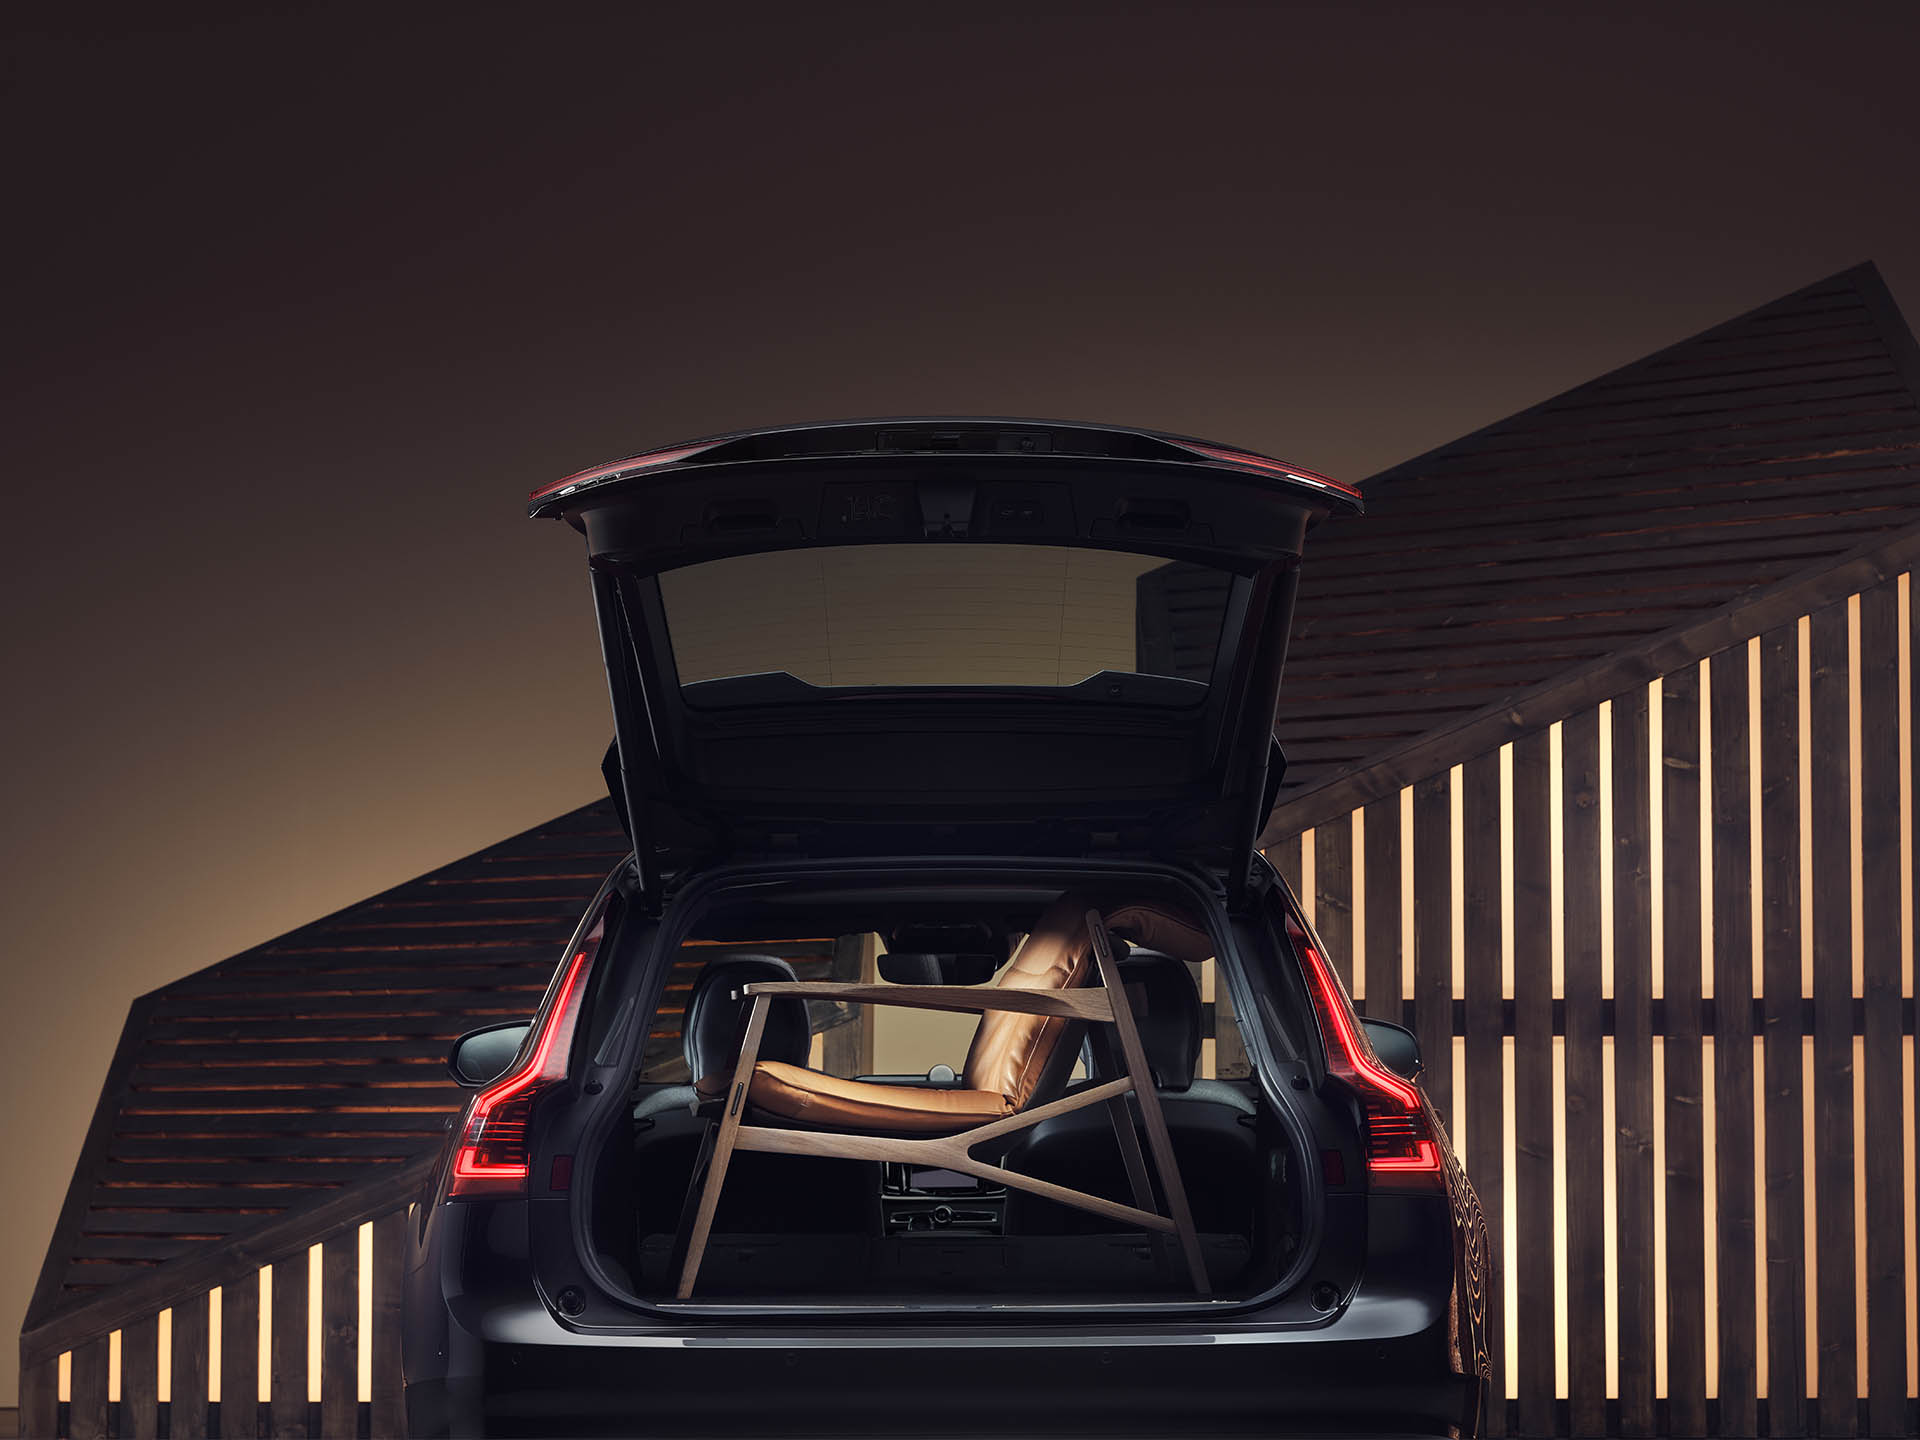 Der Kofferraum eines Volvo-Kombis wird von einem braunen eleganten Sessel ausgefüllt